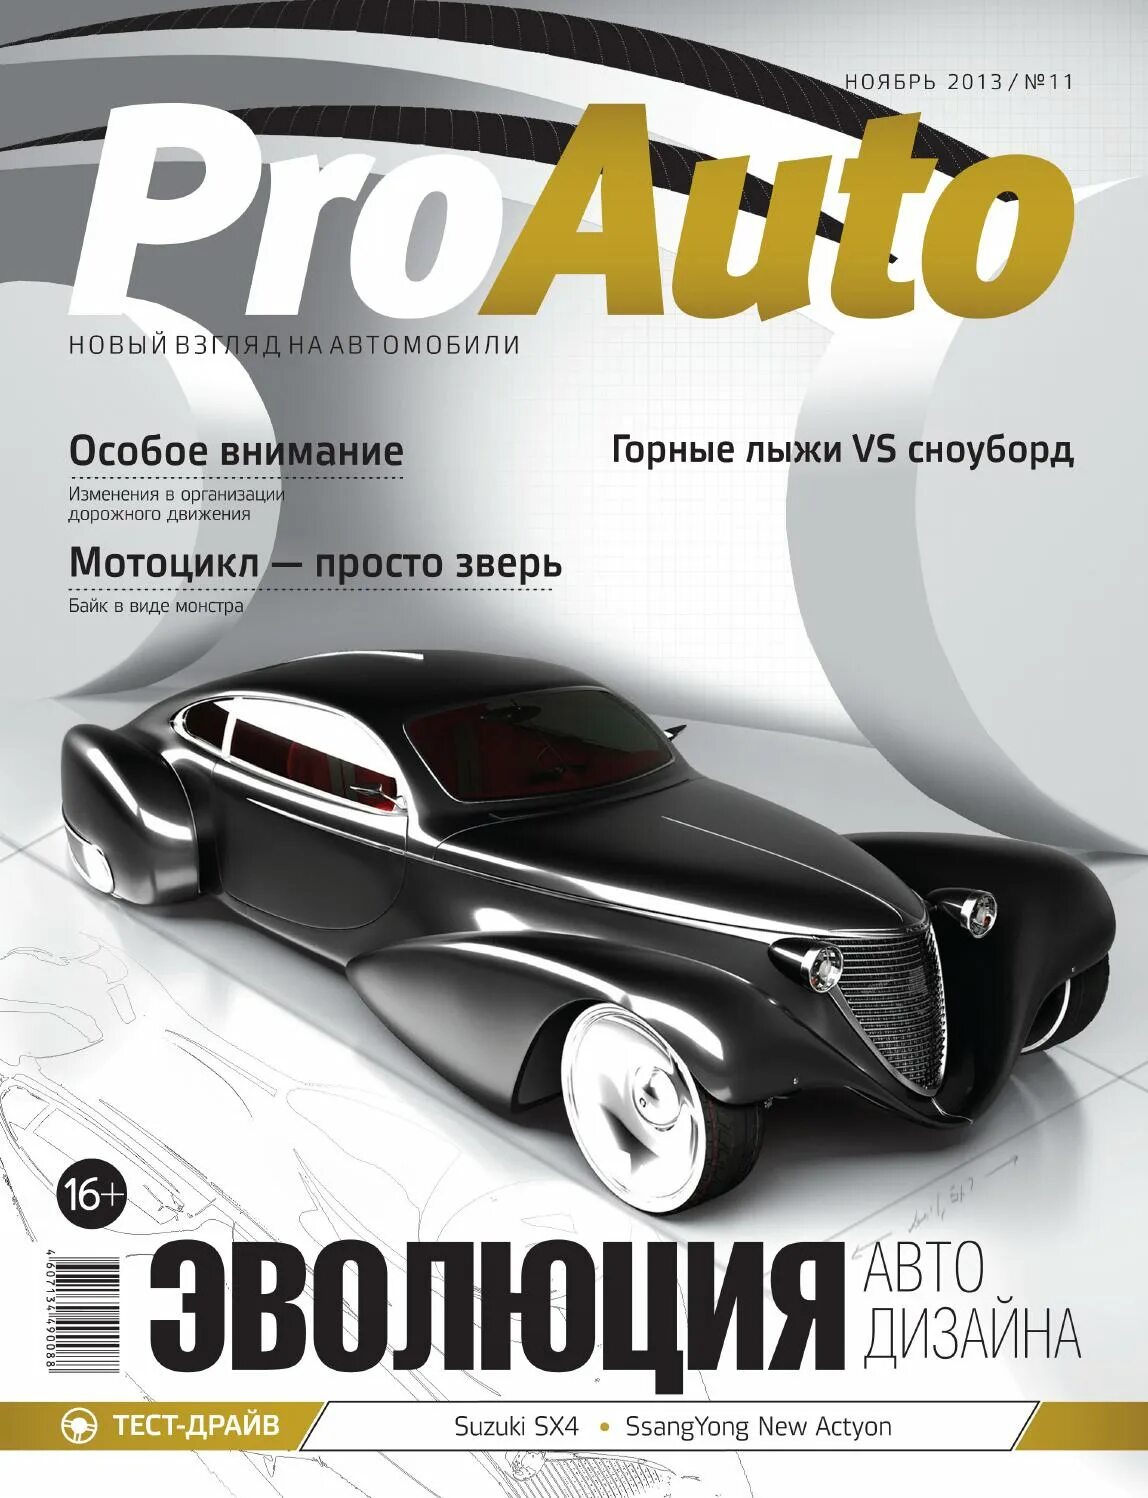 Car magazine. Автомобильные журналы. Обложка журнала автомобилей. Обложка журнала про машины. Автомобильный каталог журнал.